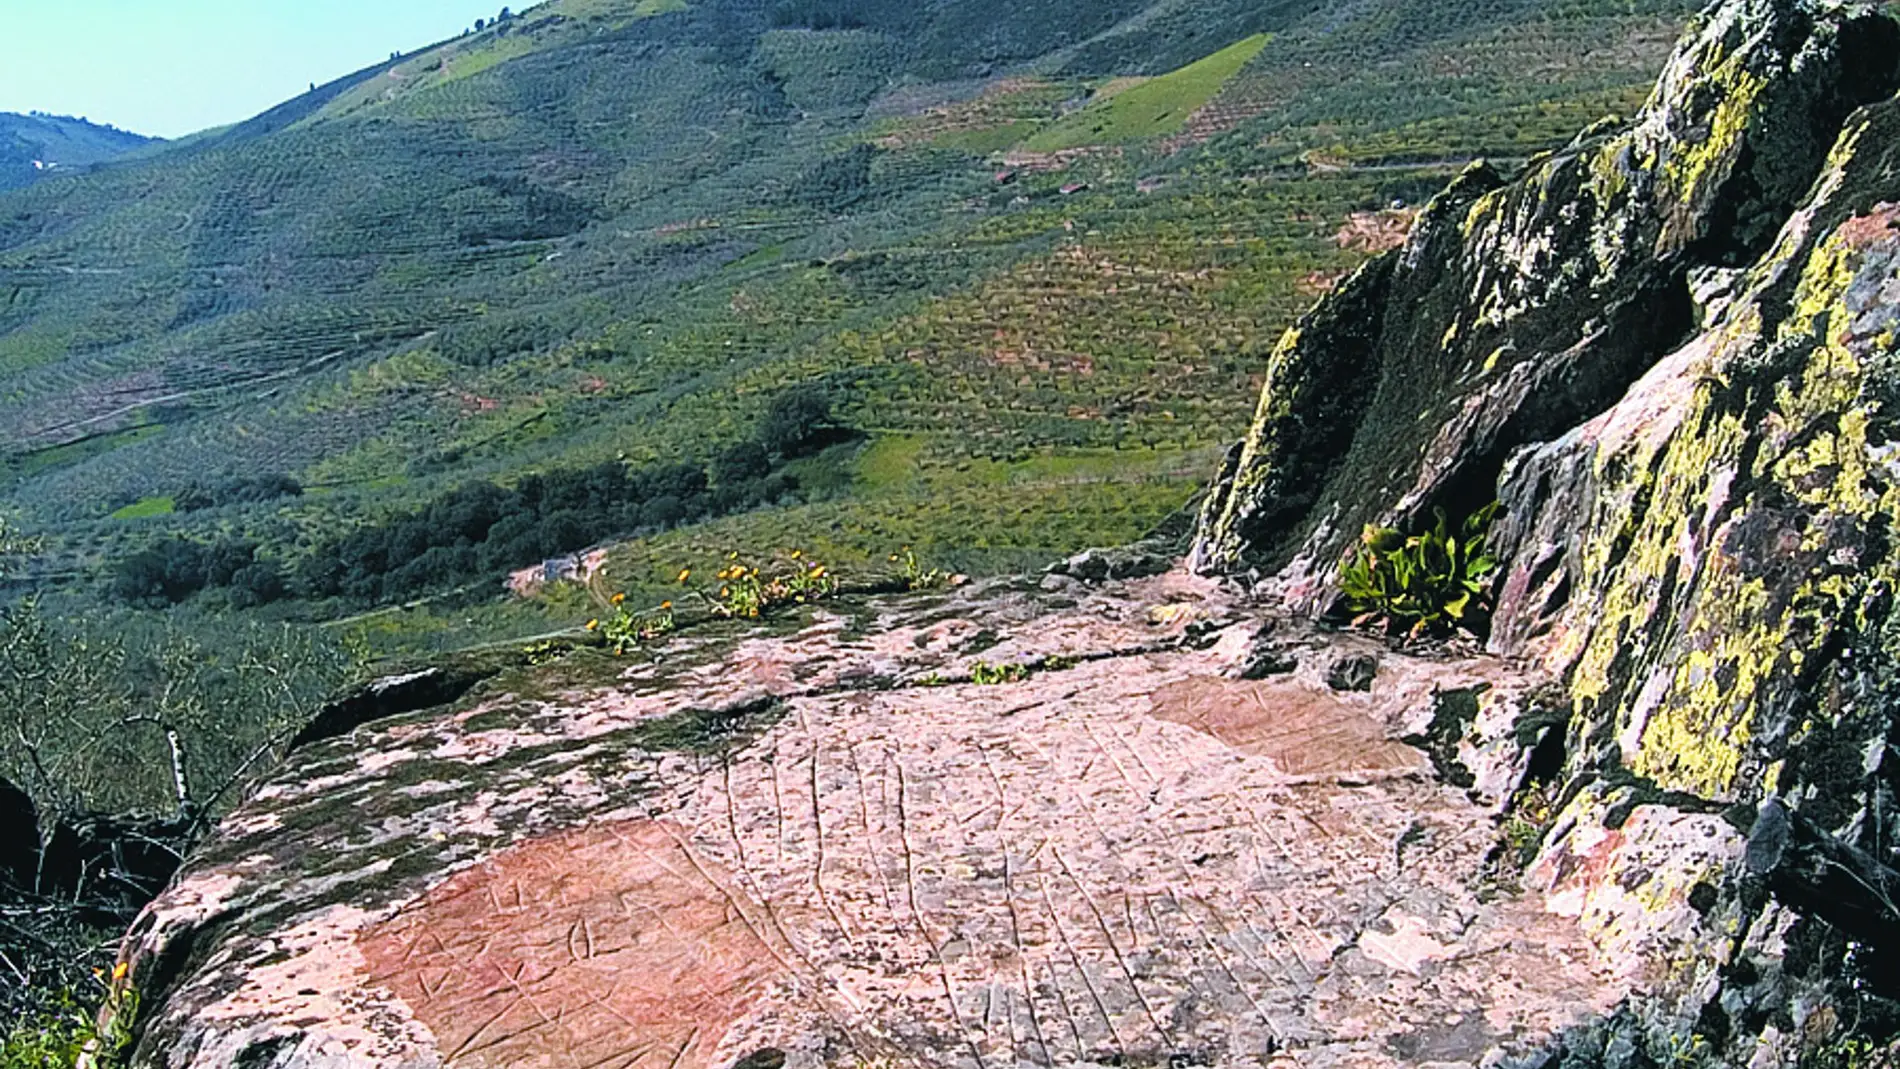 La Diputación de Cáceres impulsará el conocimiento y las visitas al conjunto de petroglifos localizados en Las Hurdes